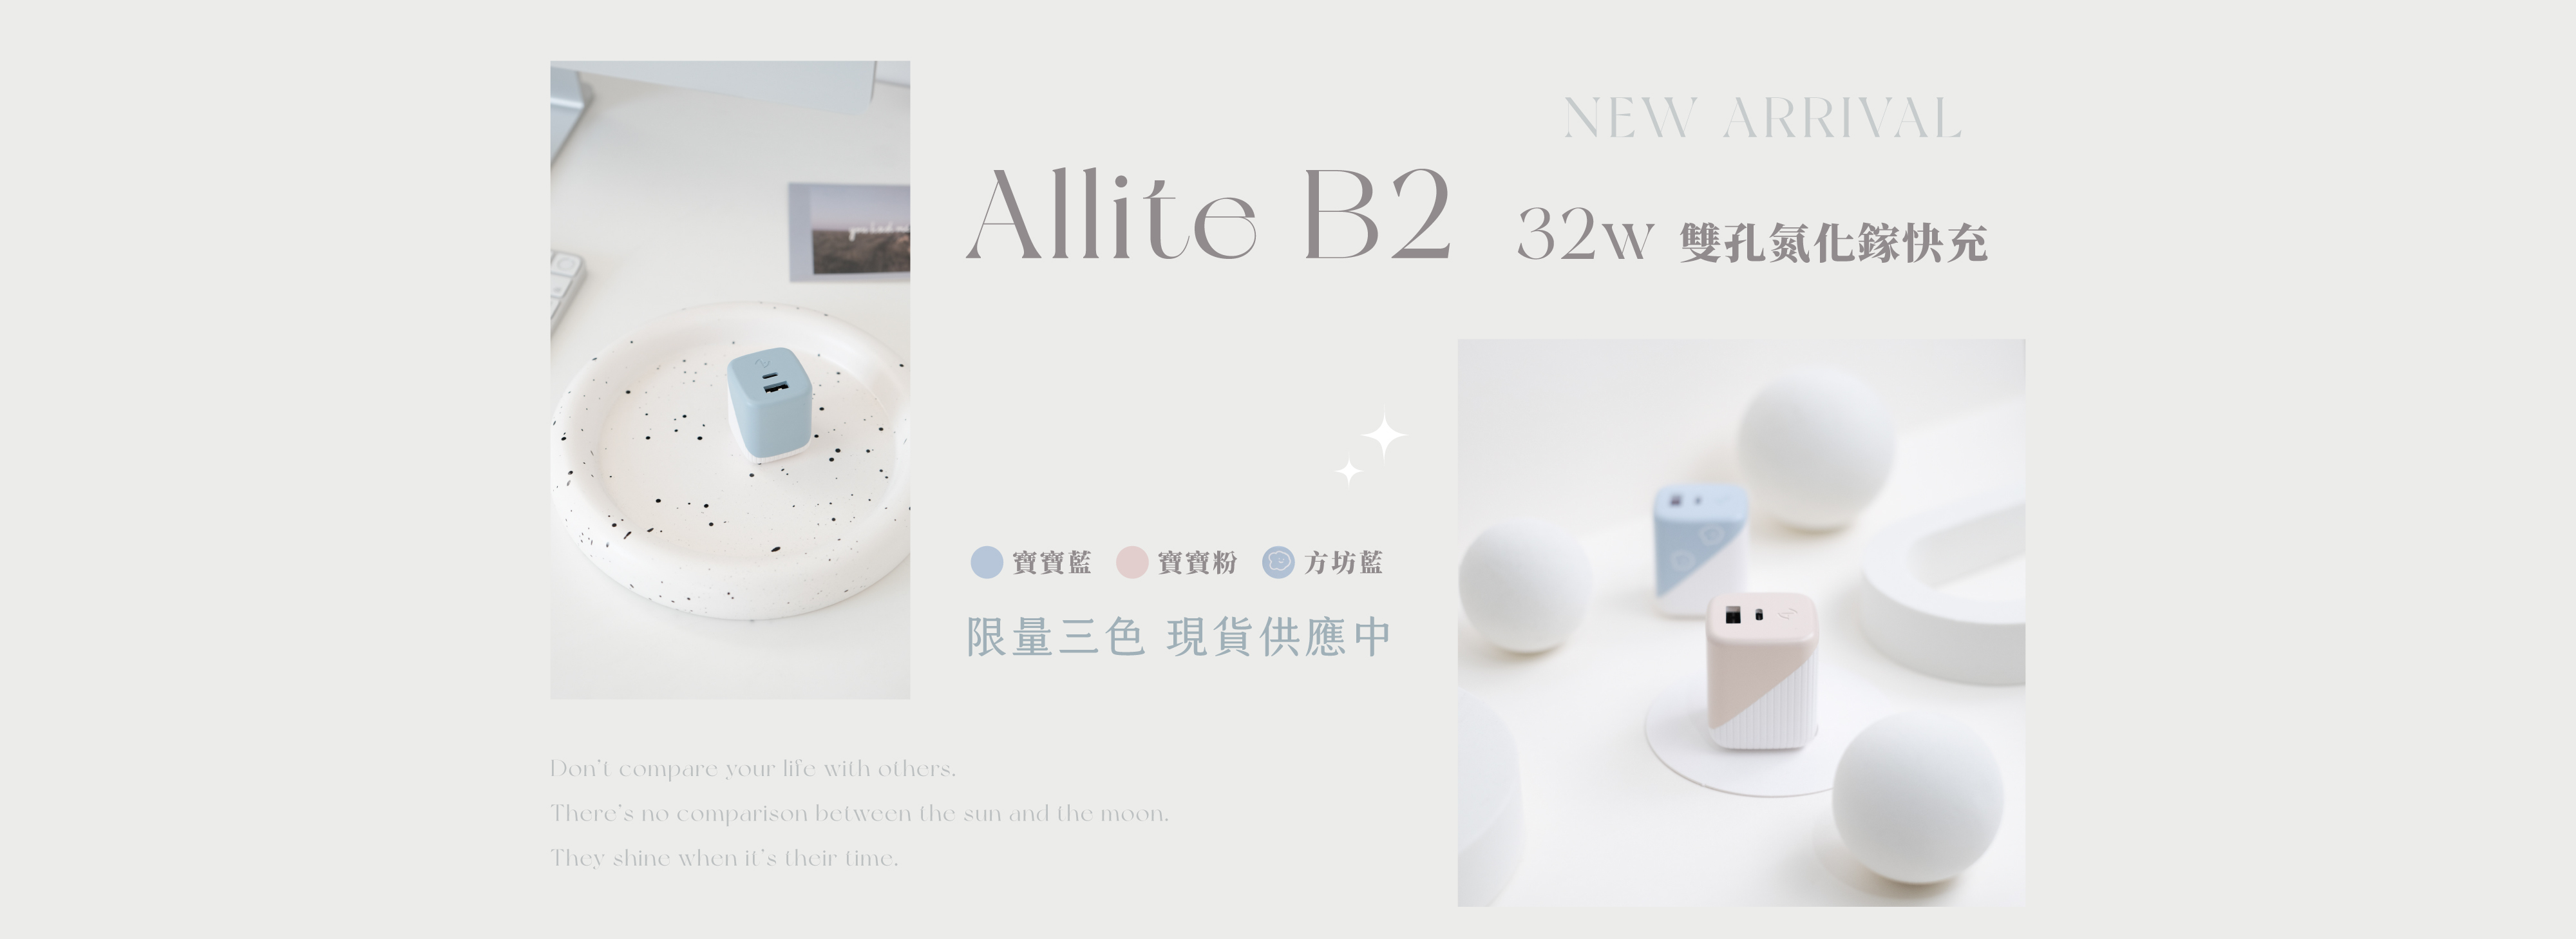 Allite B2